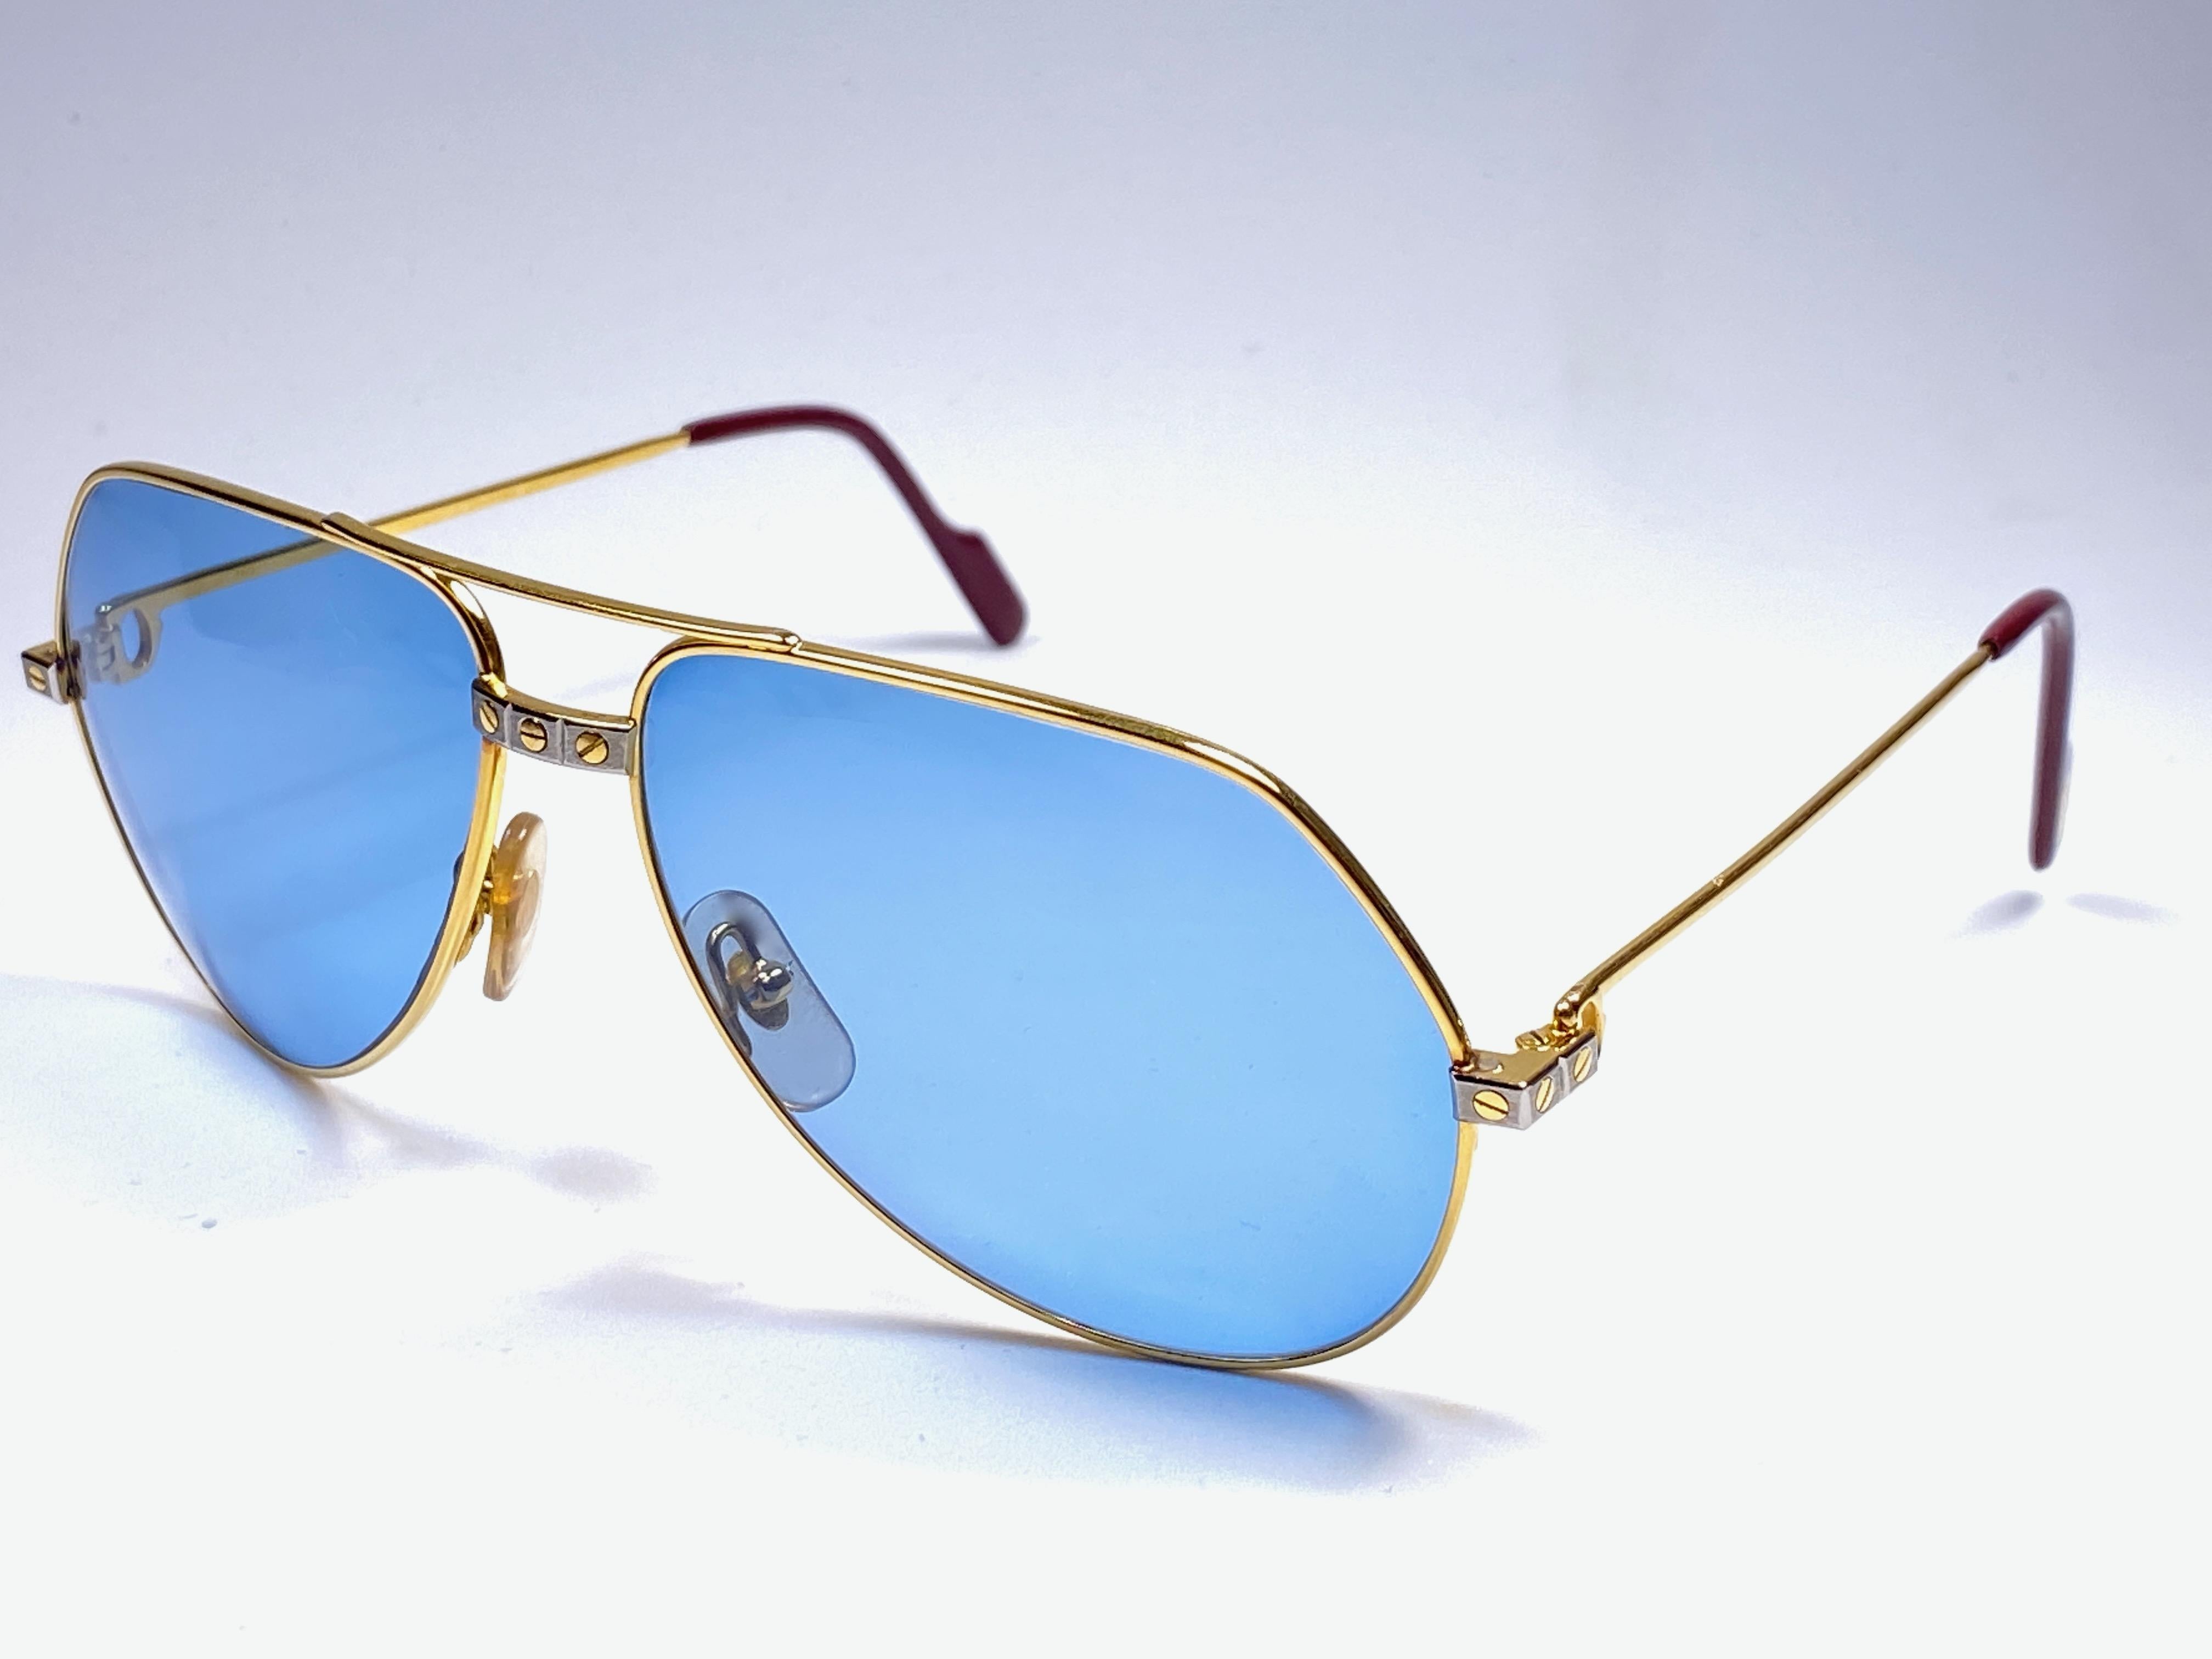 New Cartier Santos Screws 1983 62M 18K Heavy Plated Blue Lens Sunglasses France 1